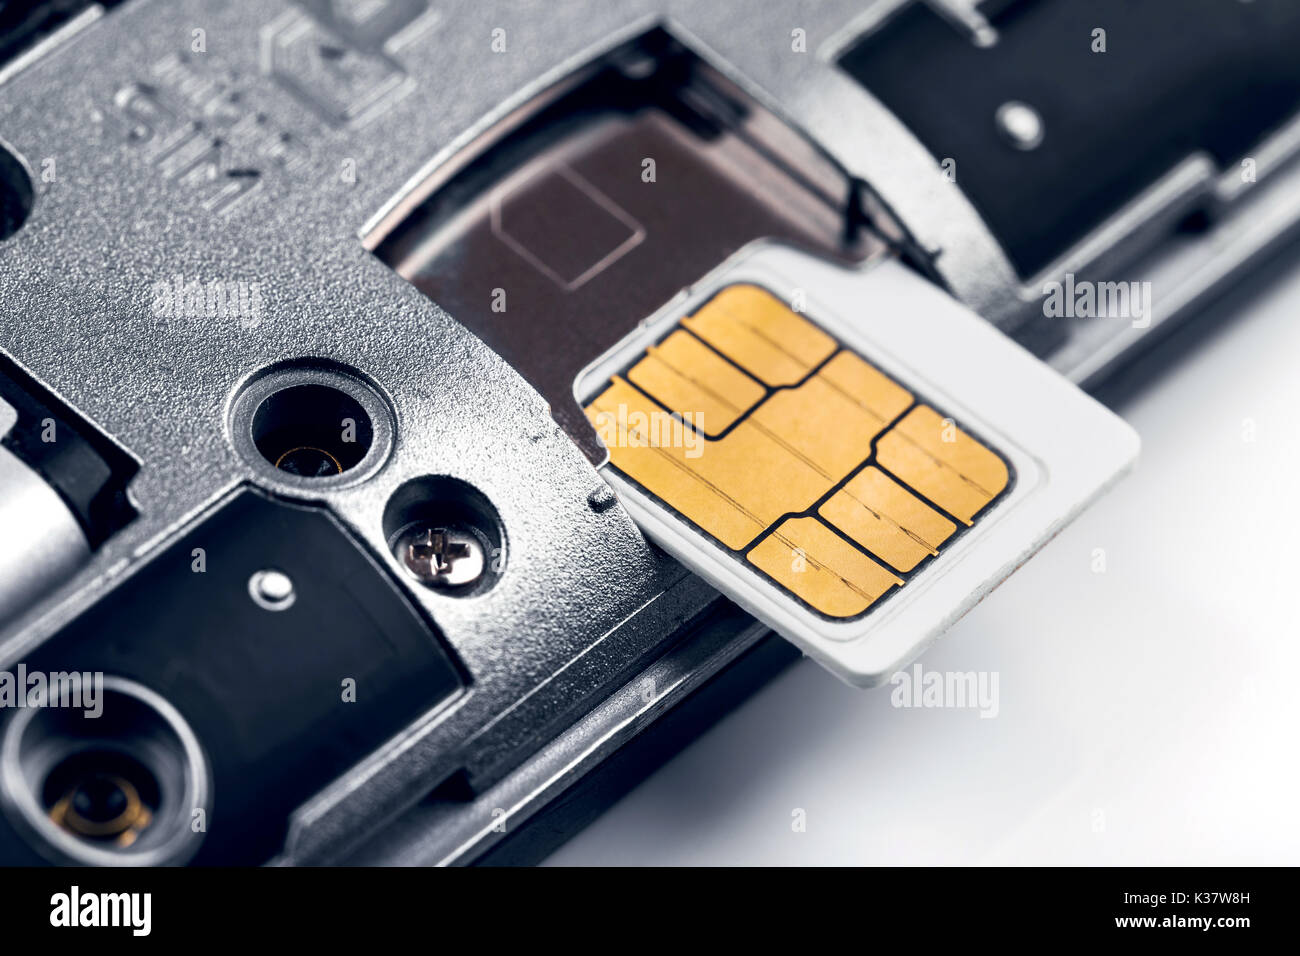 Insérer la carte SIM dans le smart phone Banque D'Images